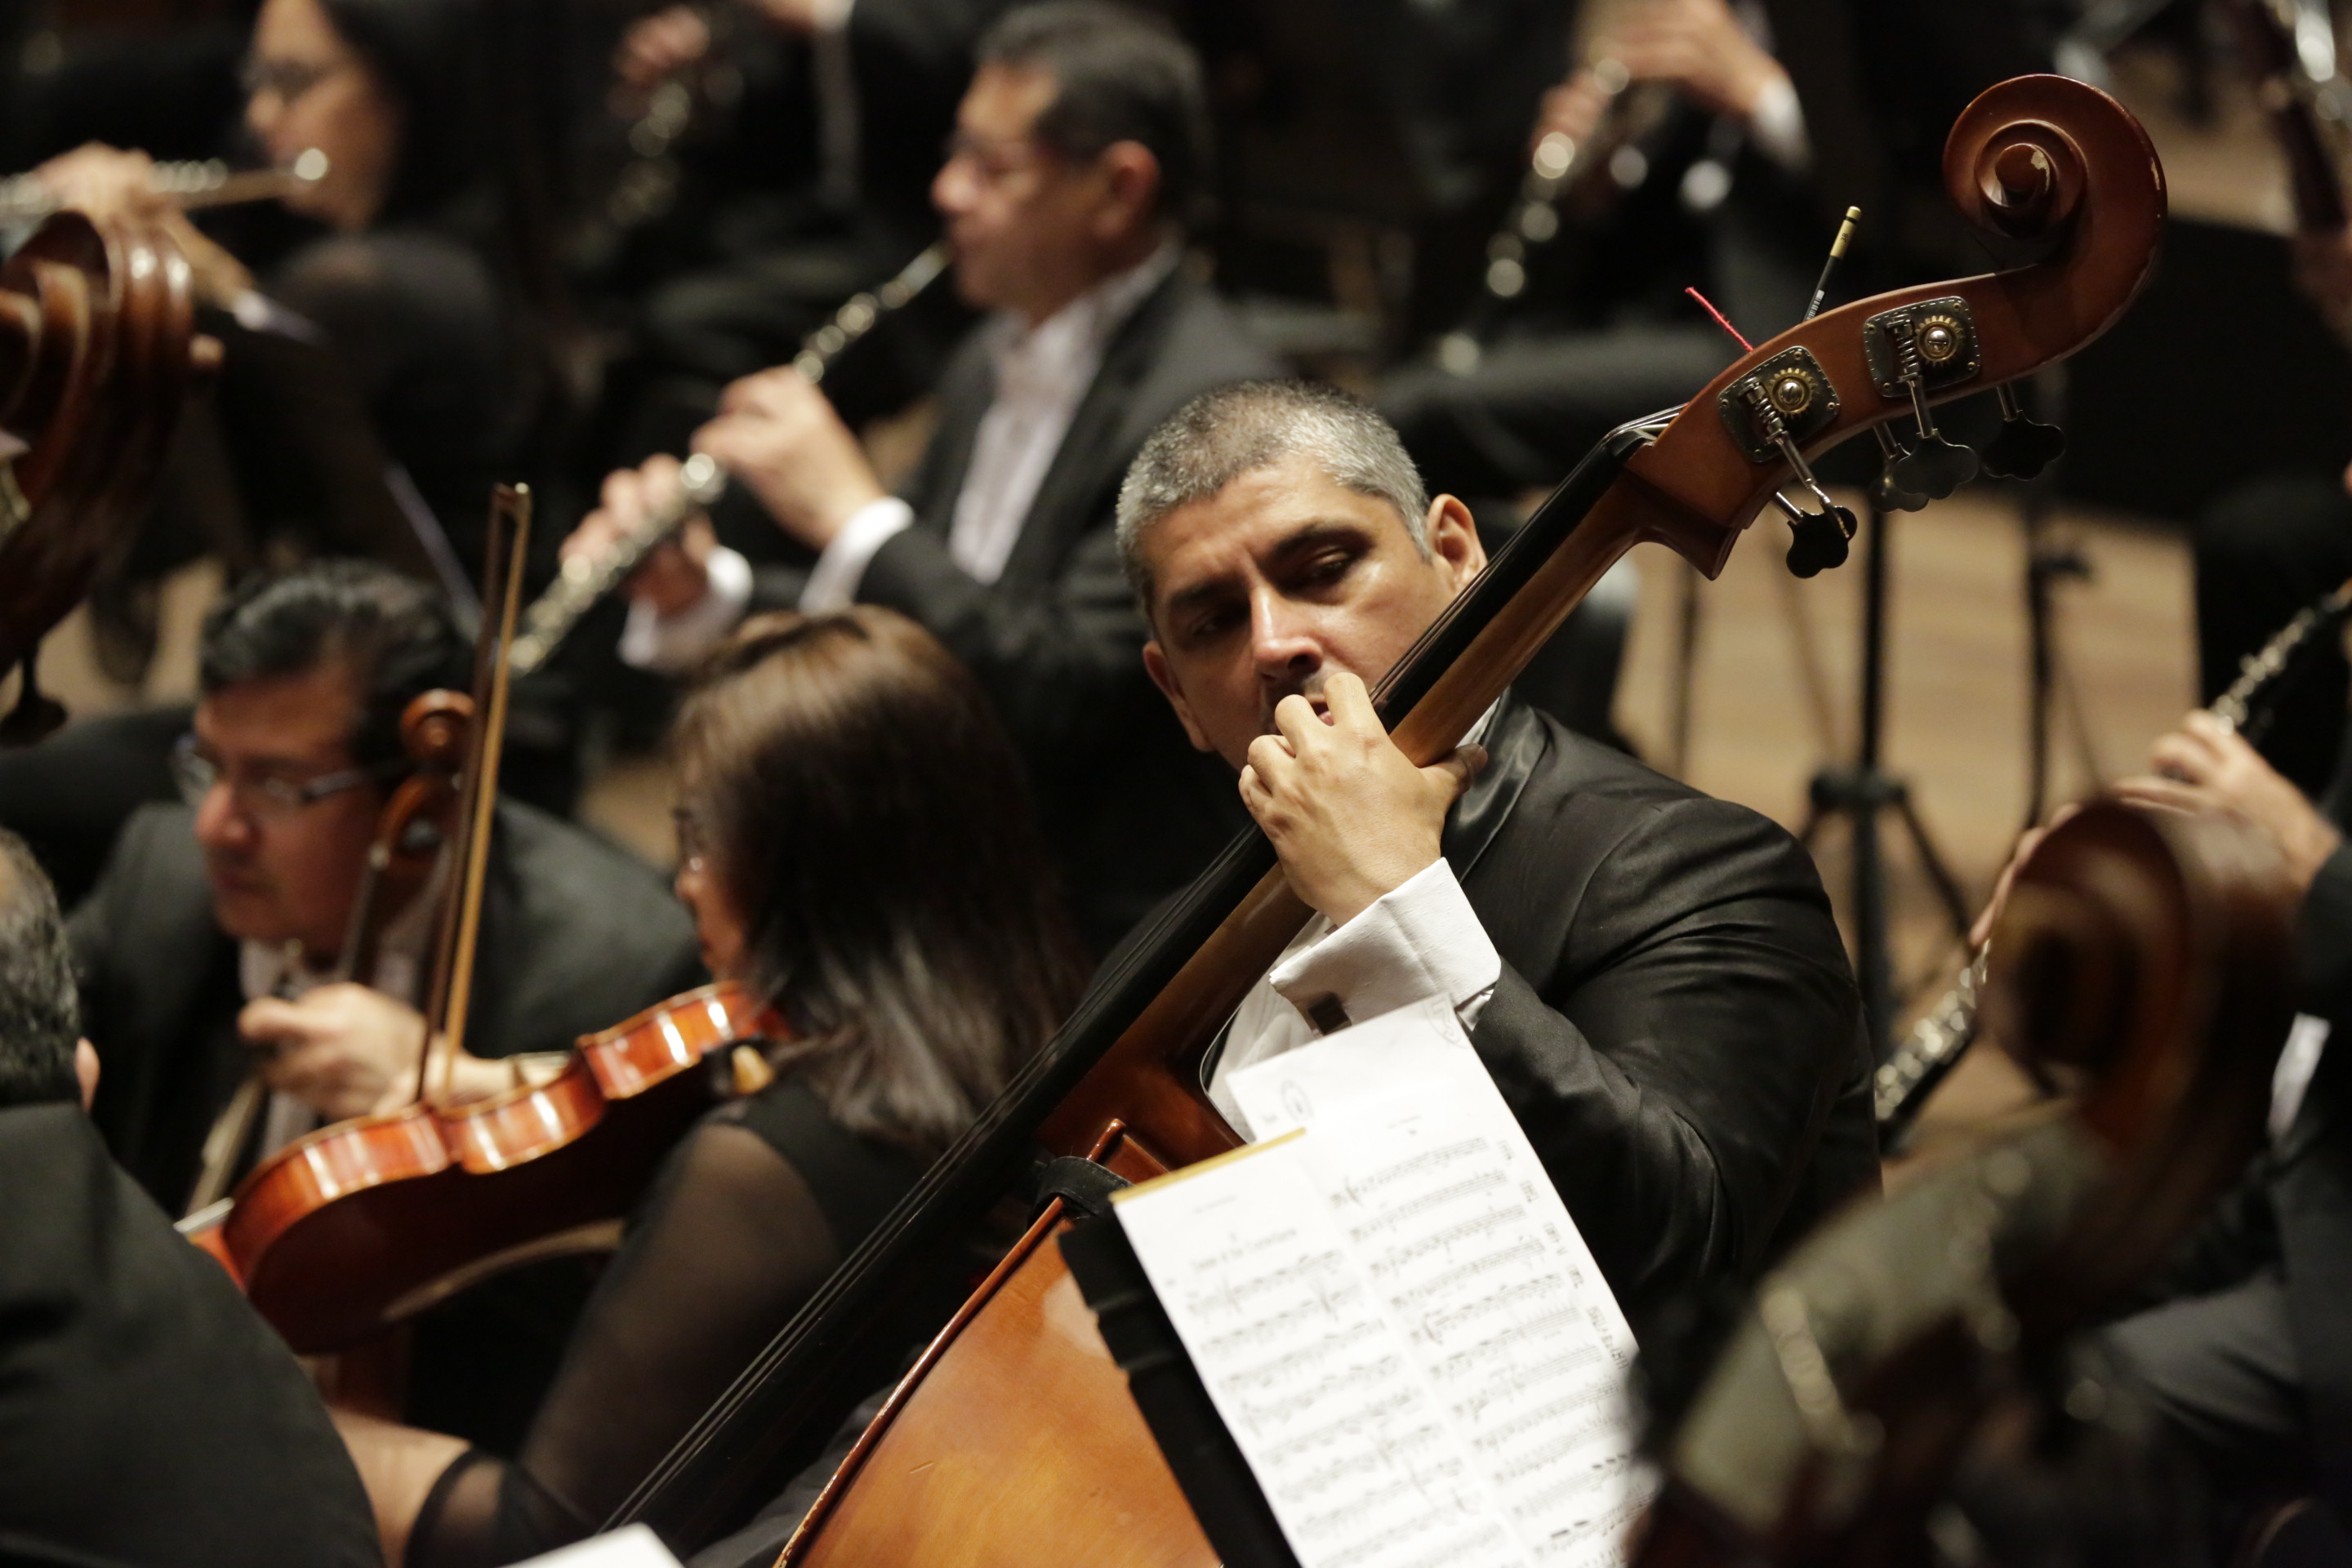 Orquesta Sinfónica Nacional del Perú presenta concierto de música de cámara “Encuentro de compositores peruanos” junto al colectivo Sinapsis